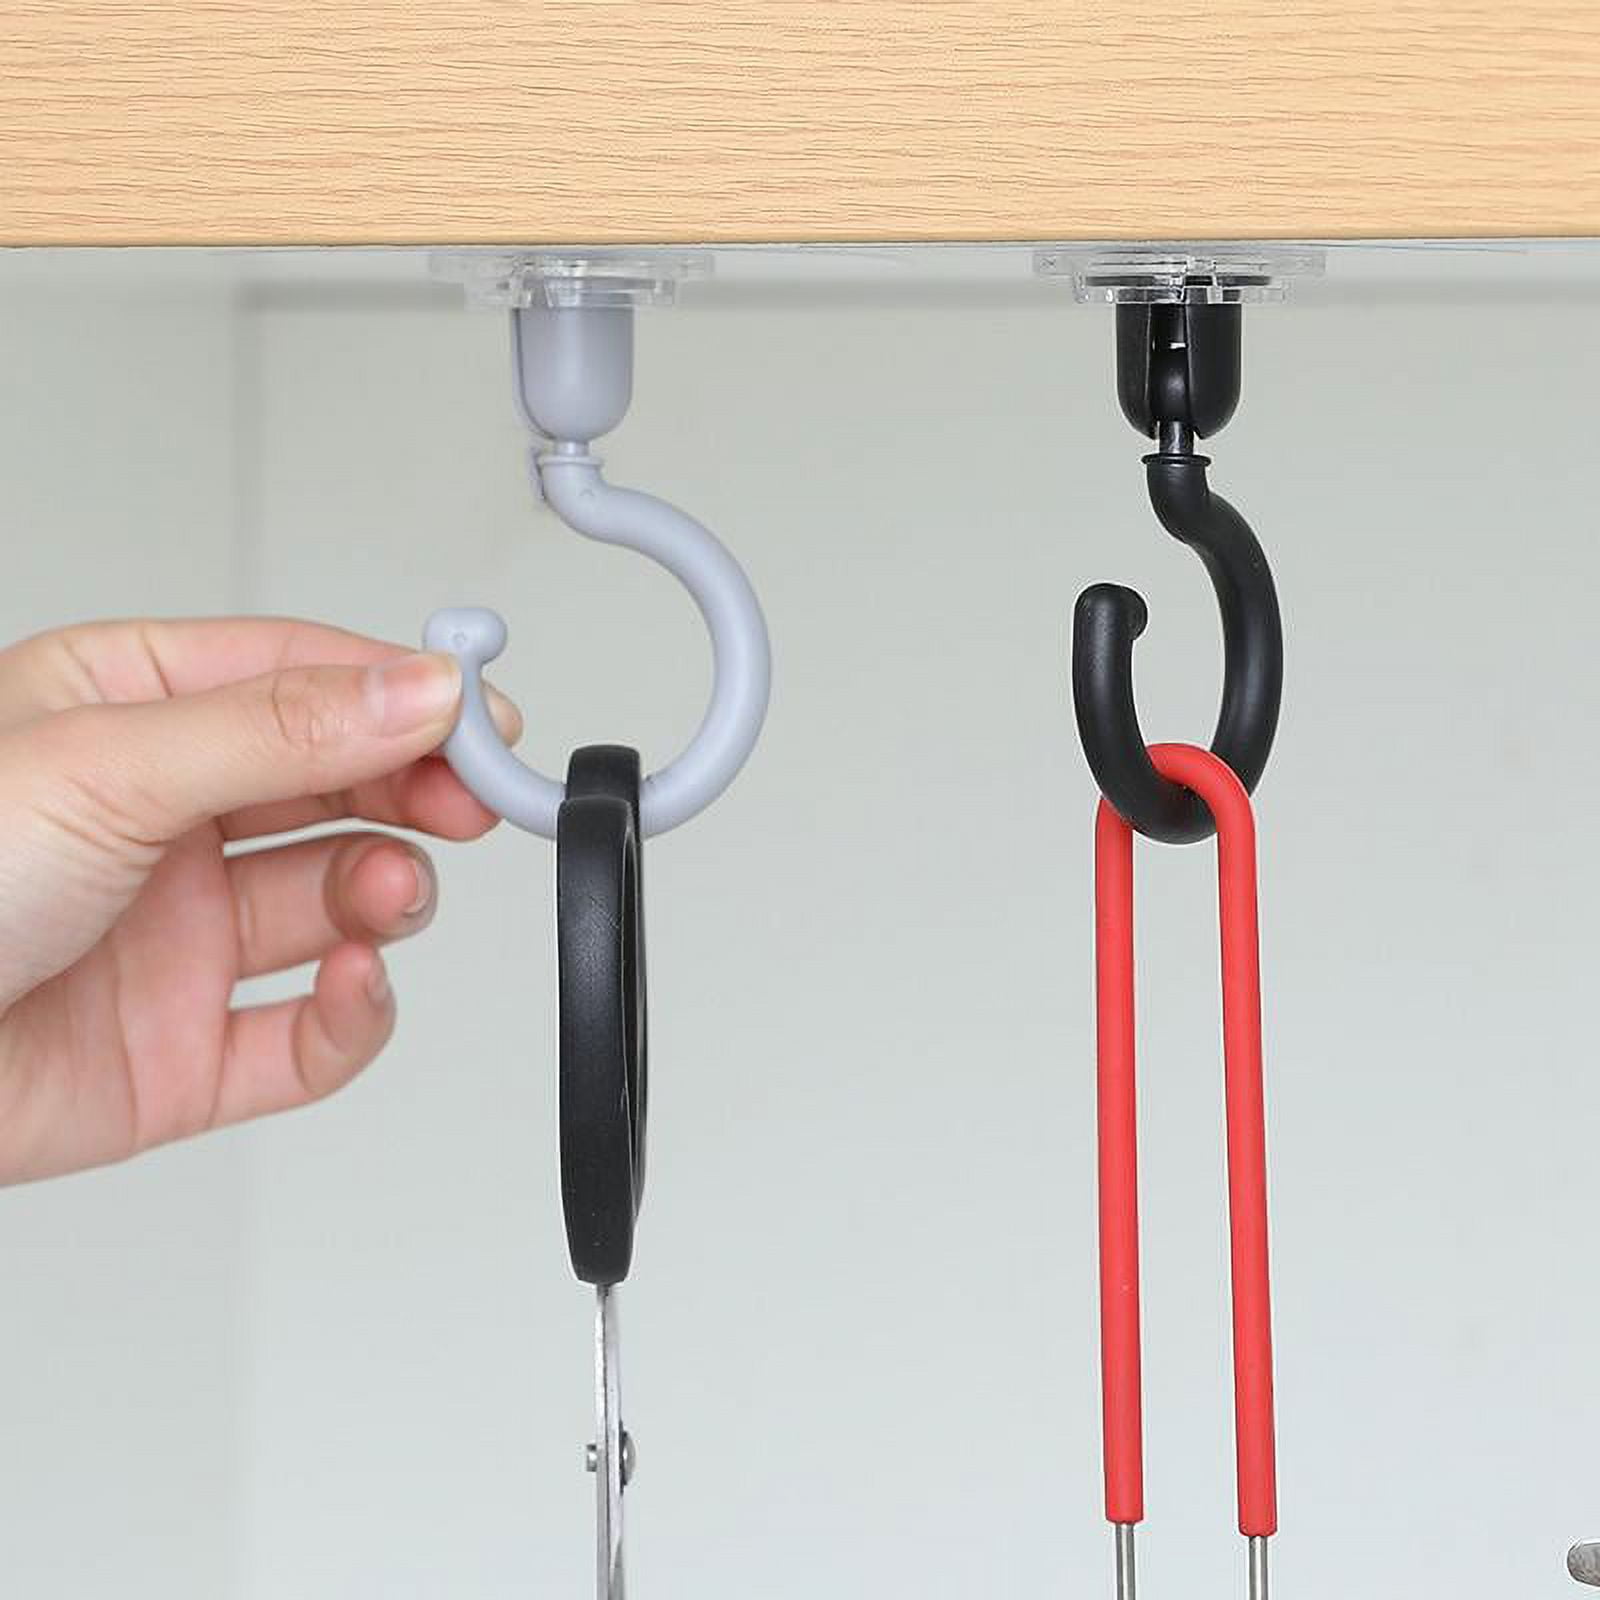 Jdomall New Hanger Hooks for ClosetPremium Smart Hanger Extender